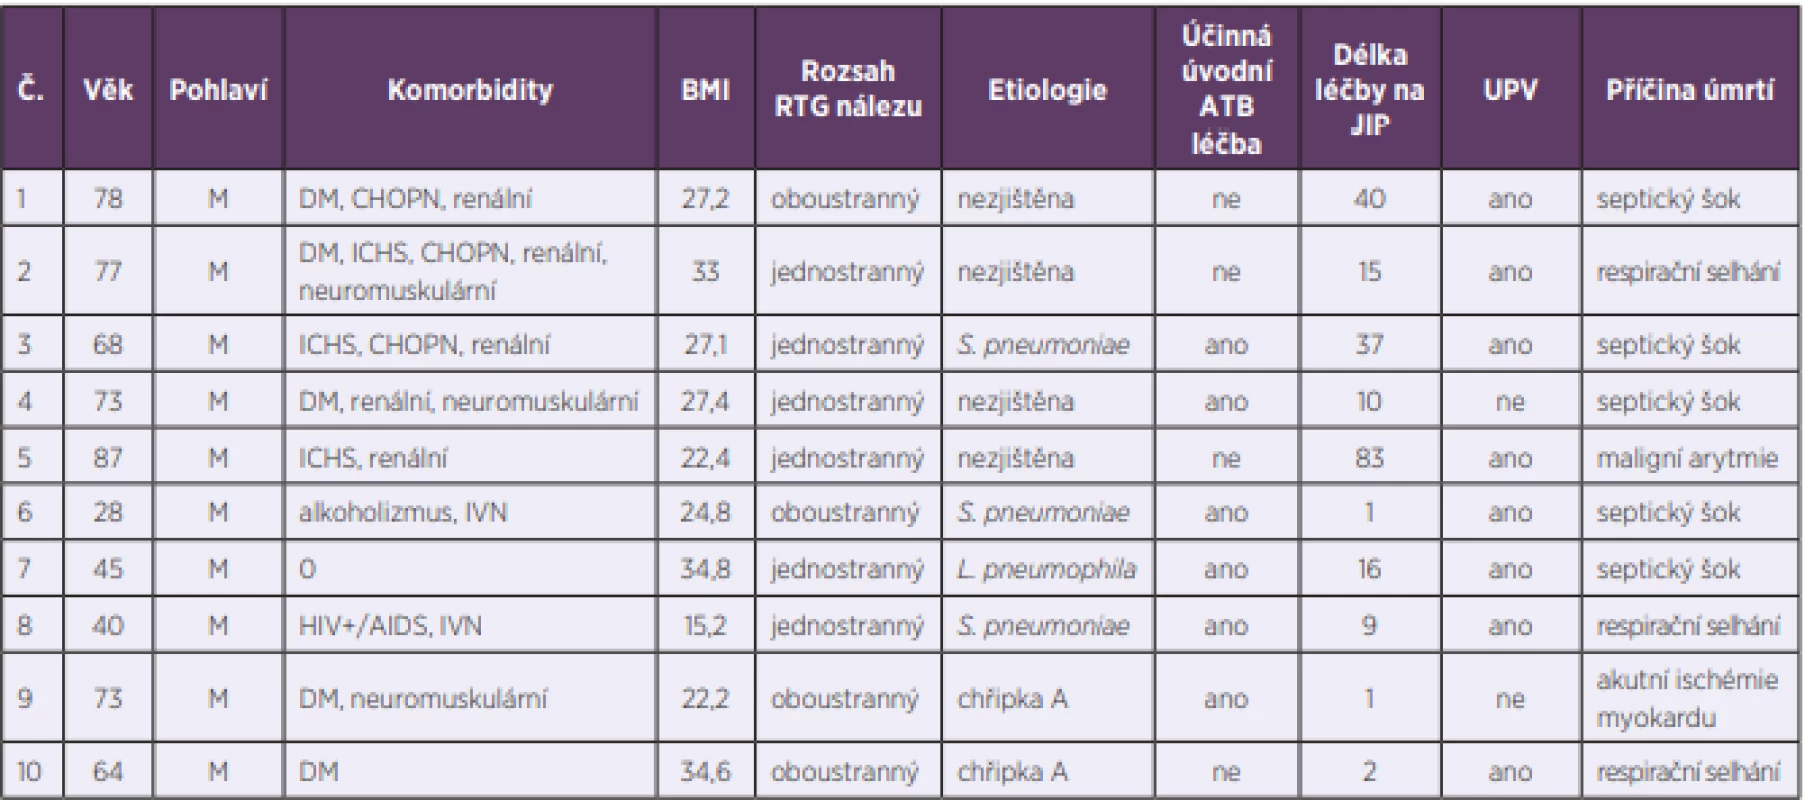 Vybrané charakteristiky zemřelých pacientů<br>
Table 4. Selected characteristics of patients who died